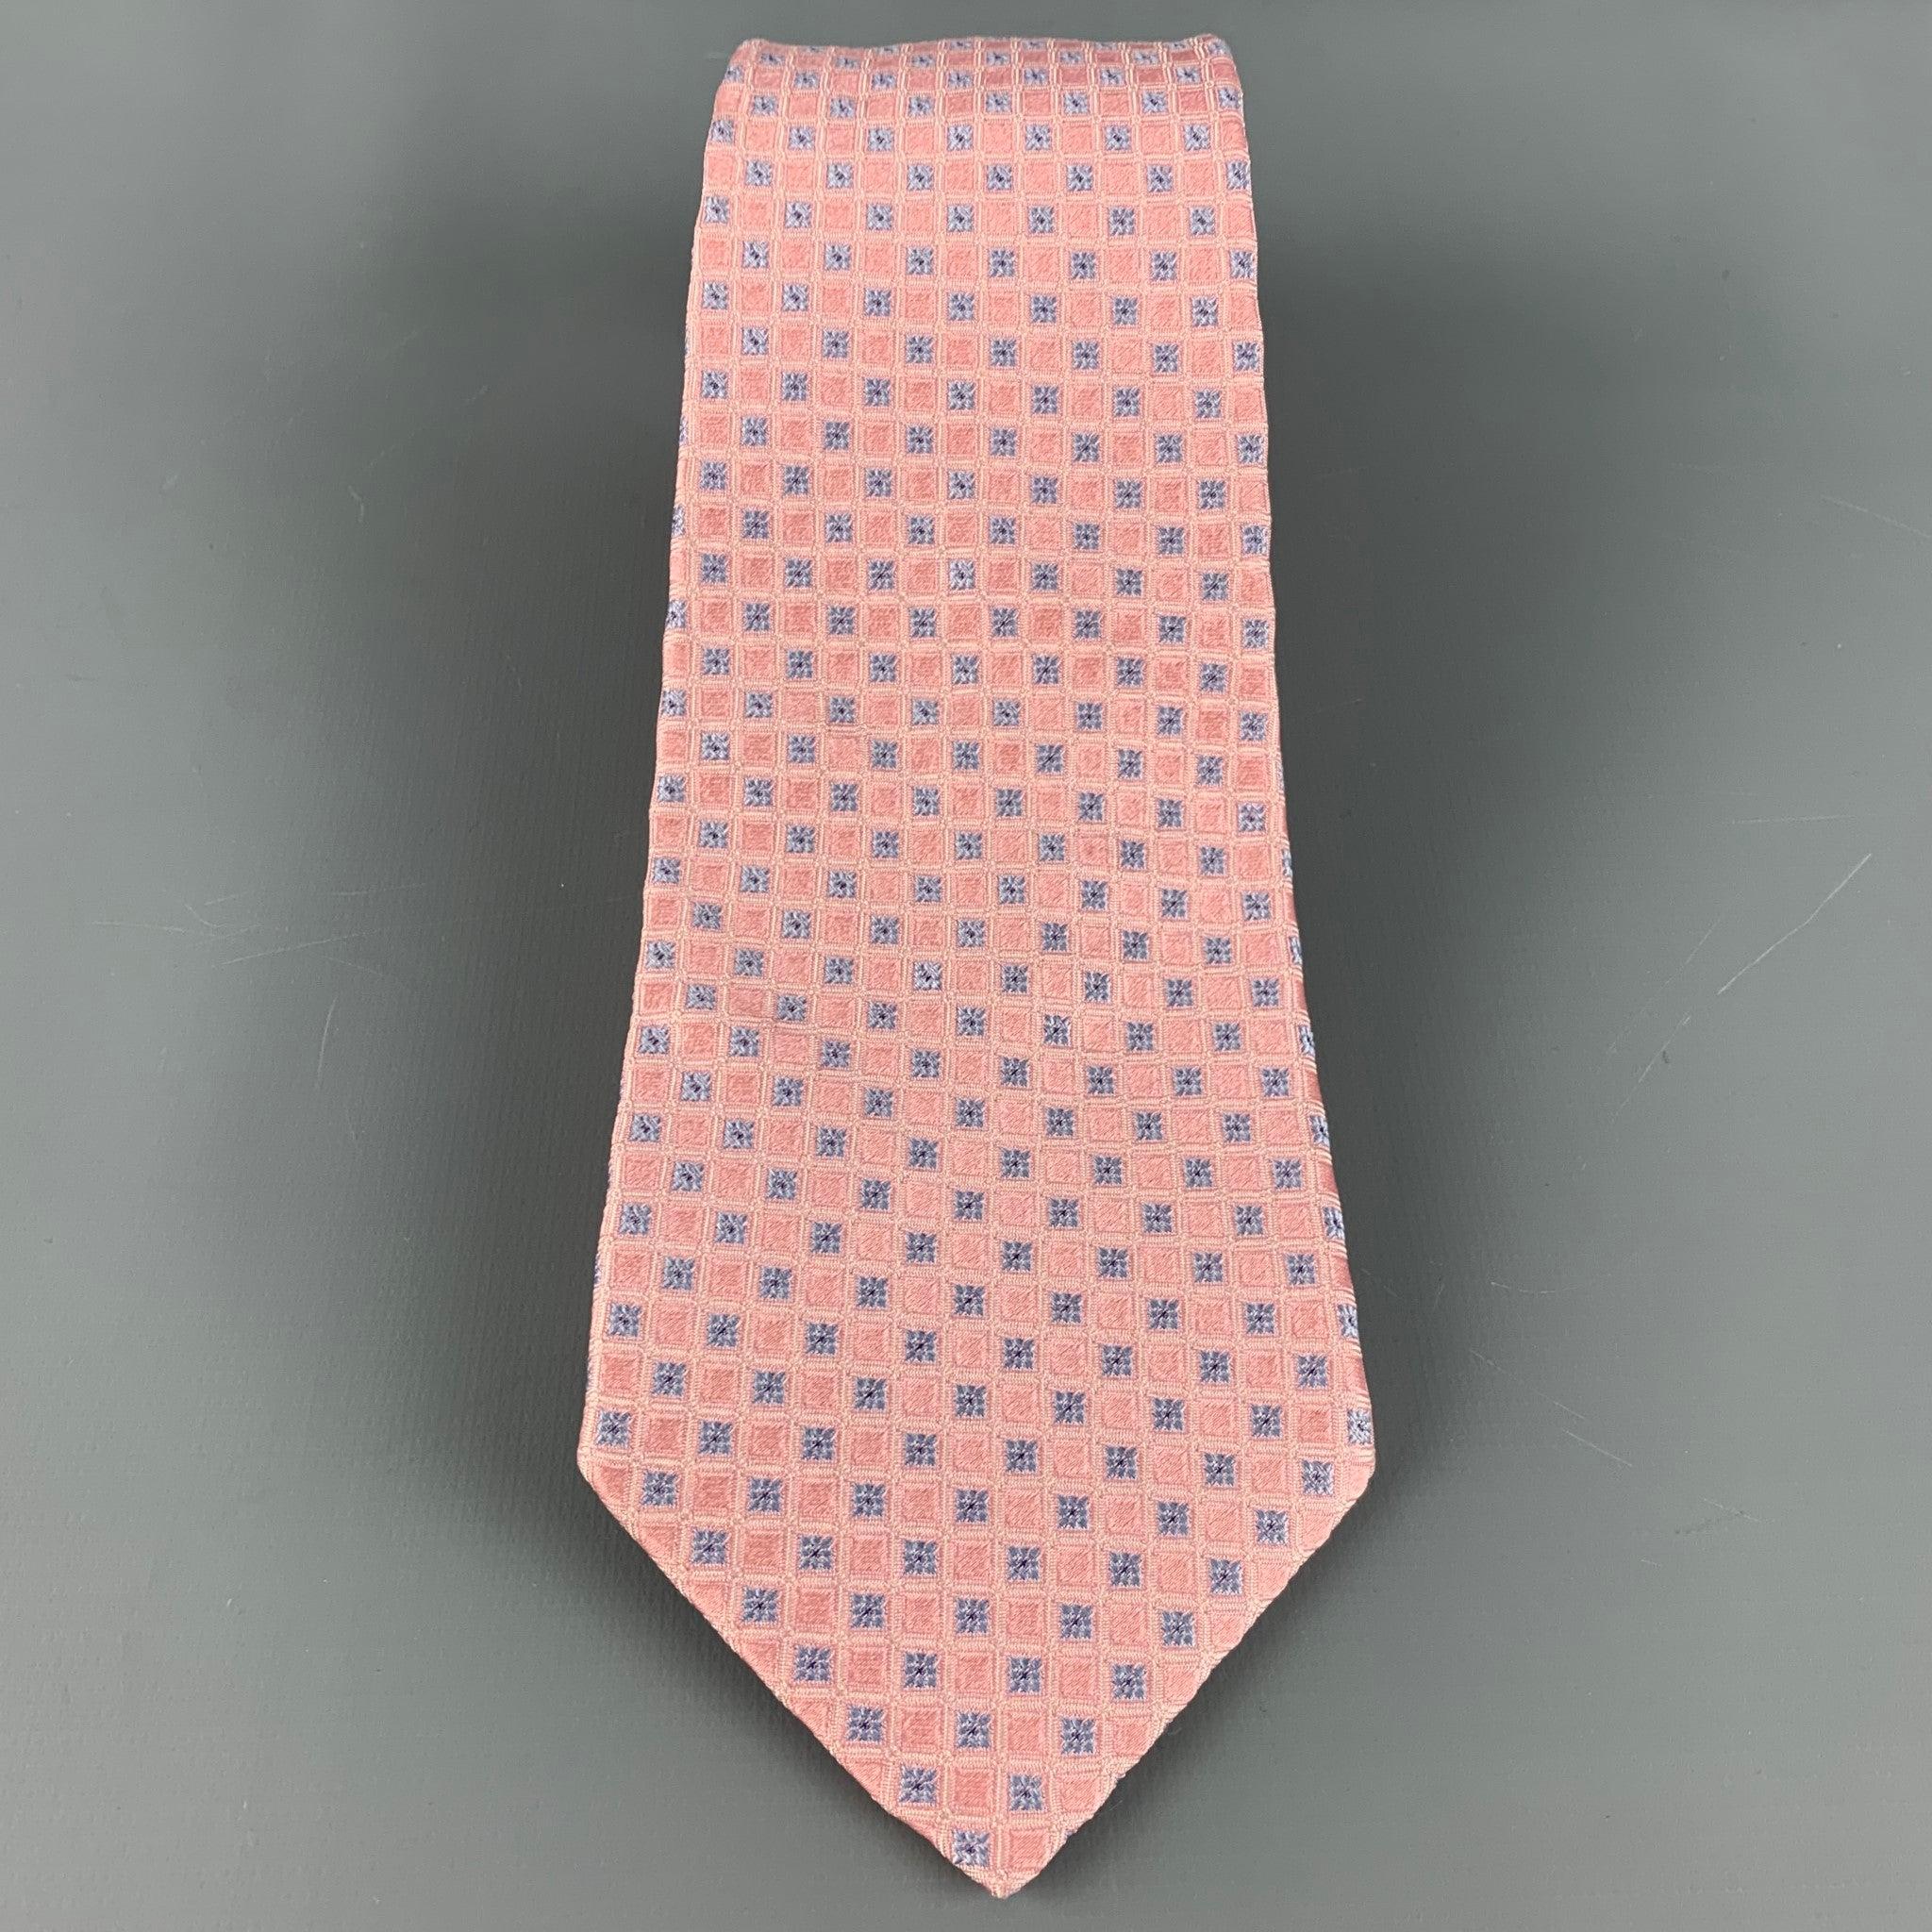 VALENTINO
cravate en soie rose, avec un motif à carreaux bleu clair. Fabriqué en Italie. Très bon état. 

Mesures : 
  Largeur : 3,5 pouces Longueur : 63 pouces 
  
  
 
Référence : 126562
Catégorie : Cravate
Plus de détails
    
Marque : 